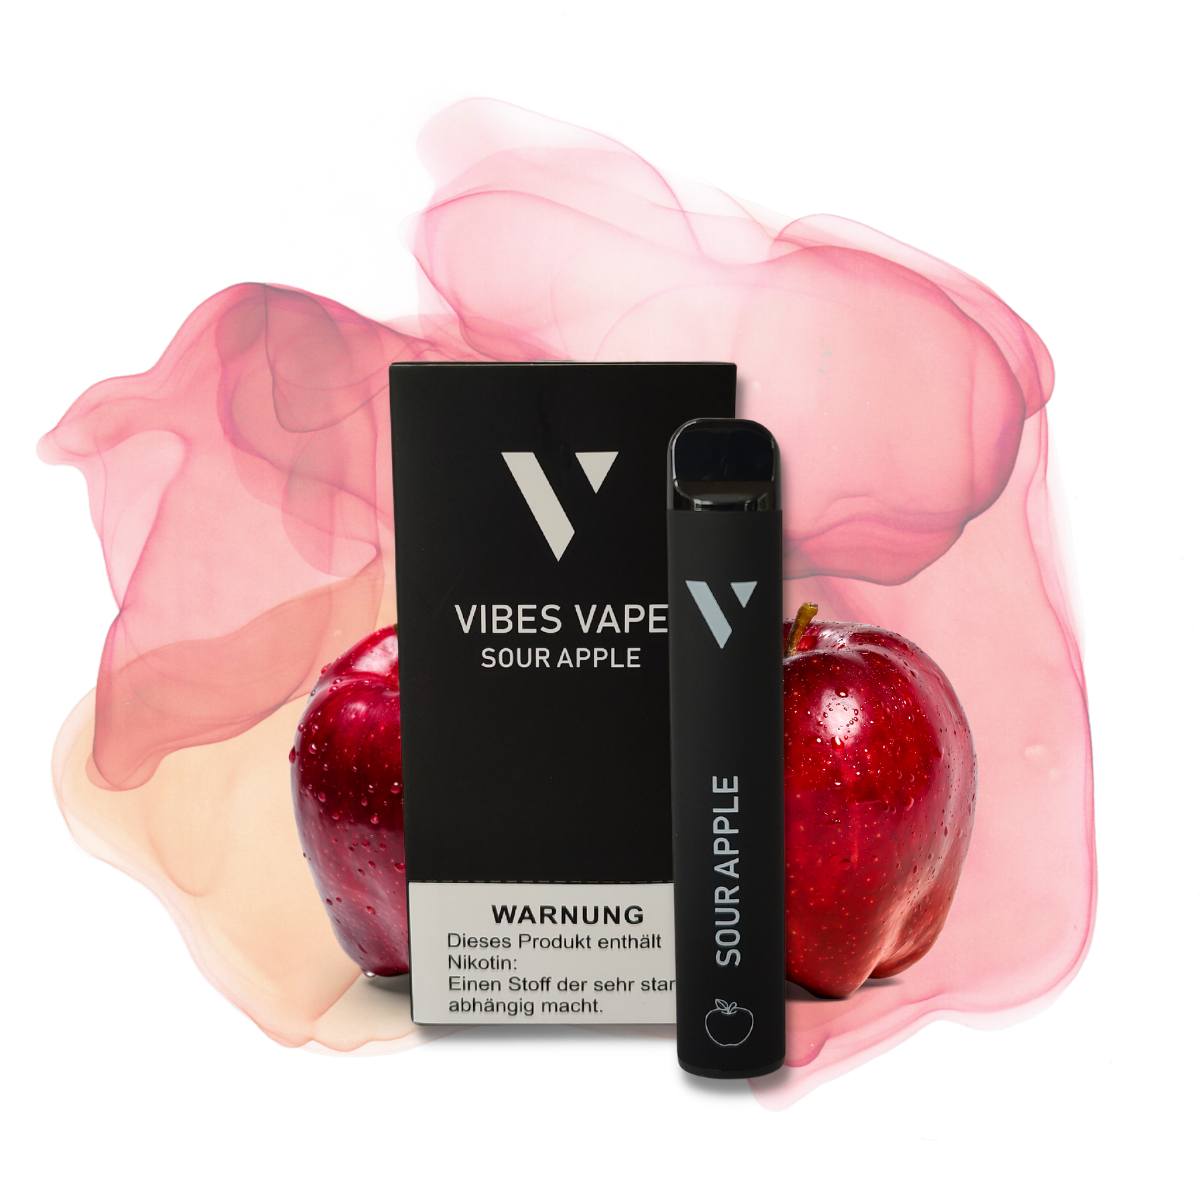 10x Vibes Vape - Sour Apple - vibesvape.de